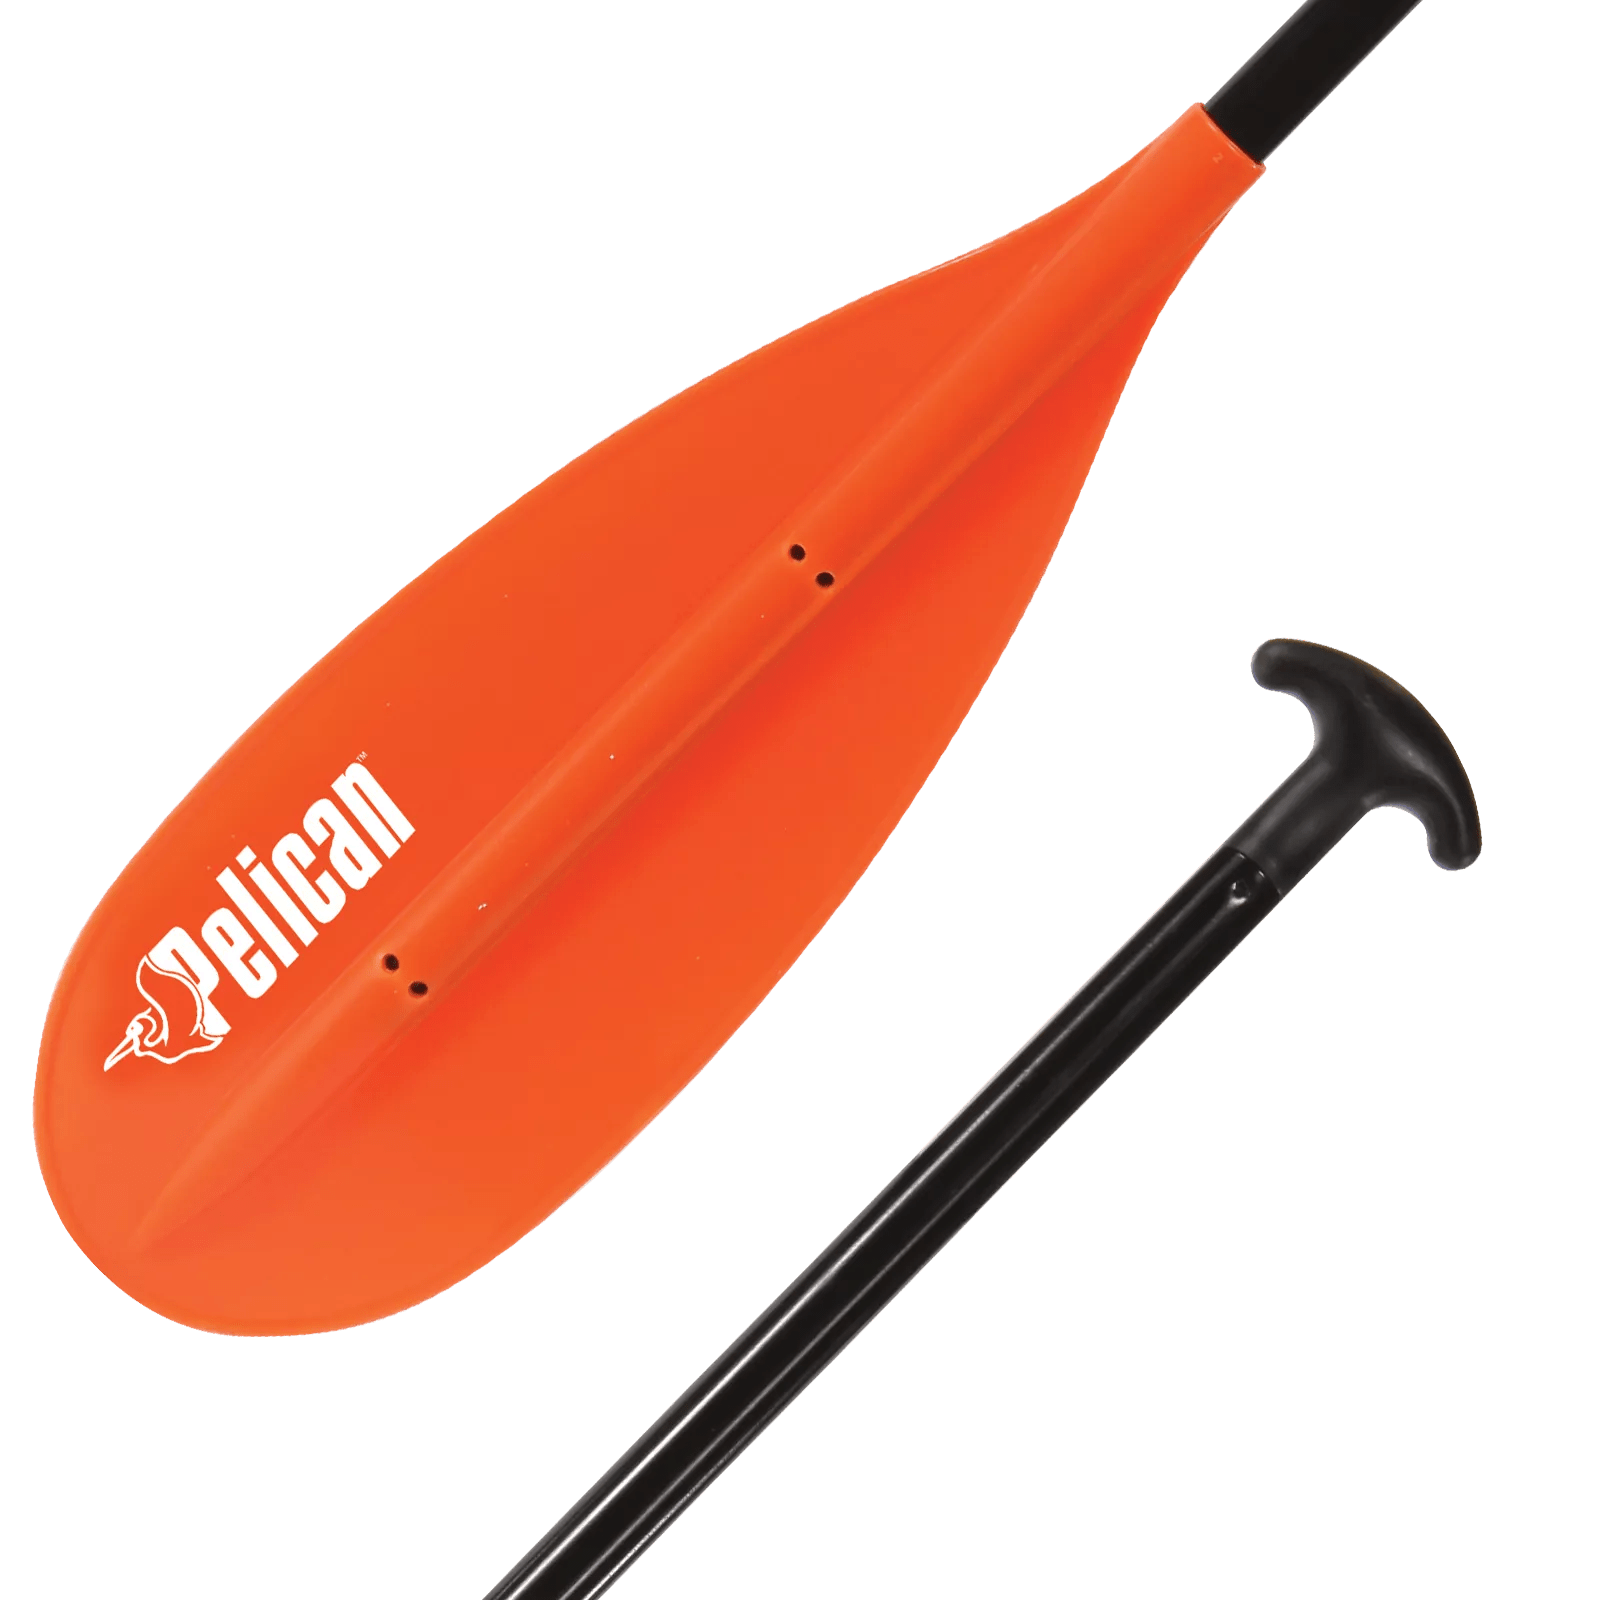 PELICAN - Pagaie de canot Beavertail de 145 cm (57 po) - Orange - PS0134-3 - ISO 